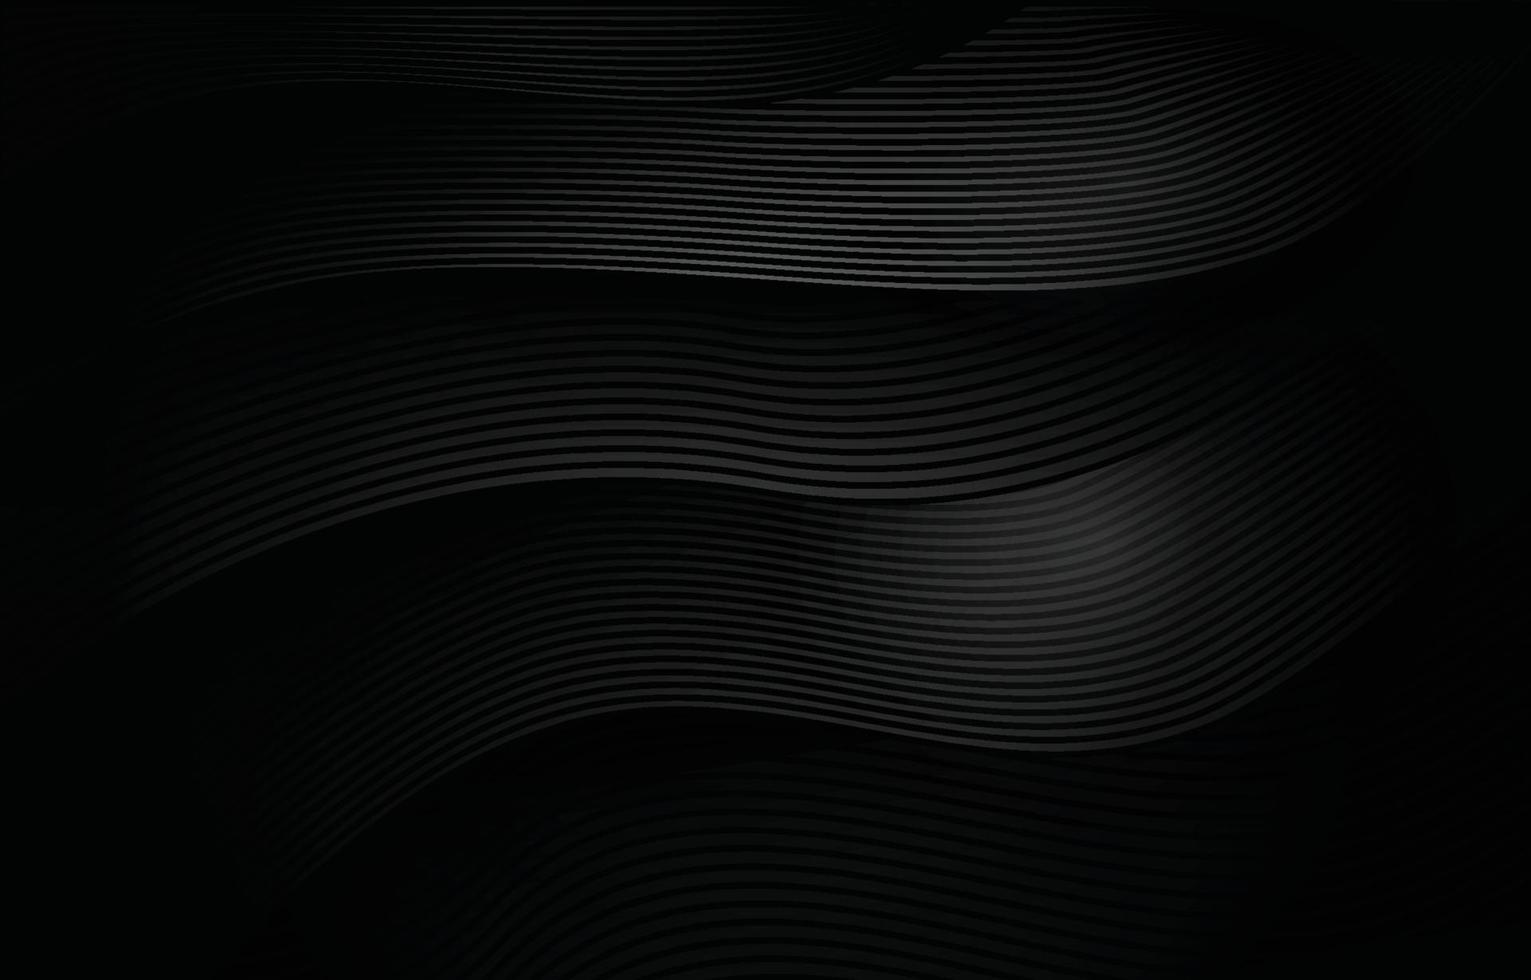 Black Wave Corporate Technology Leerzeichen Hintergrund vektor